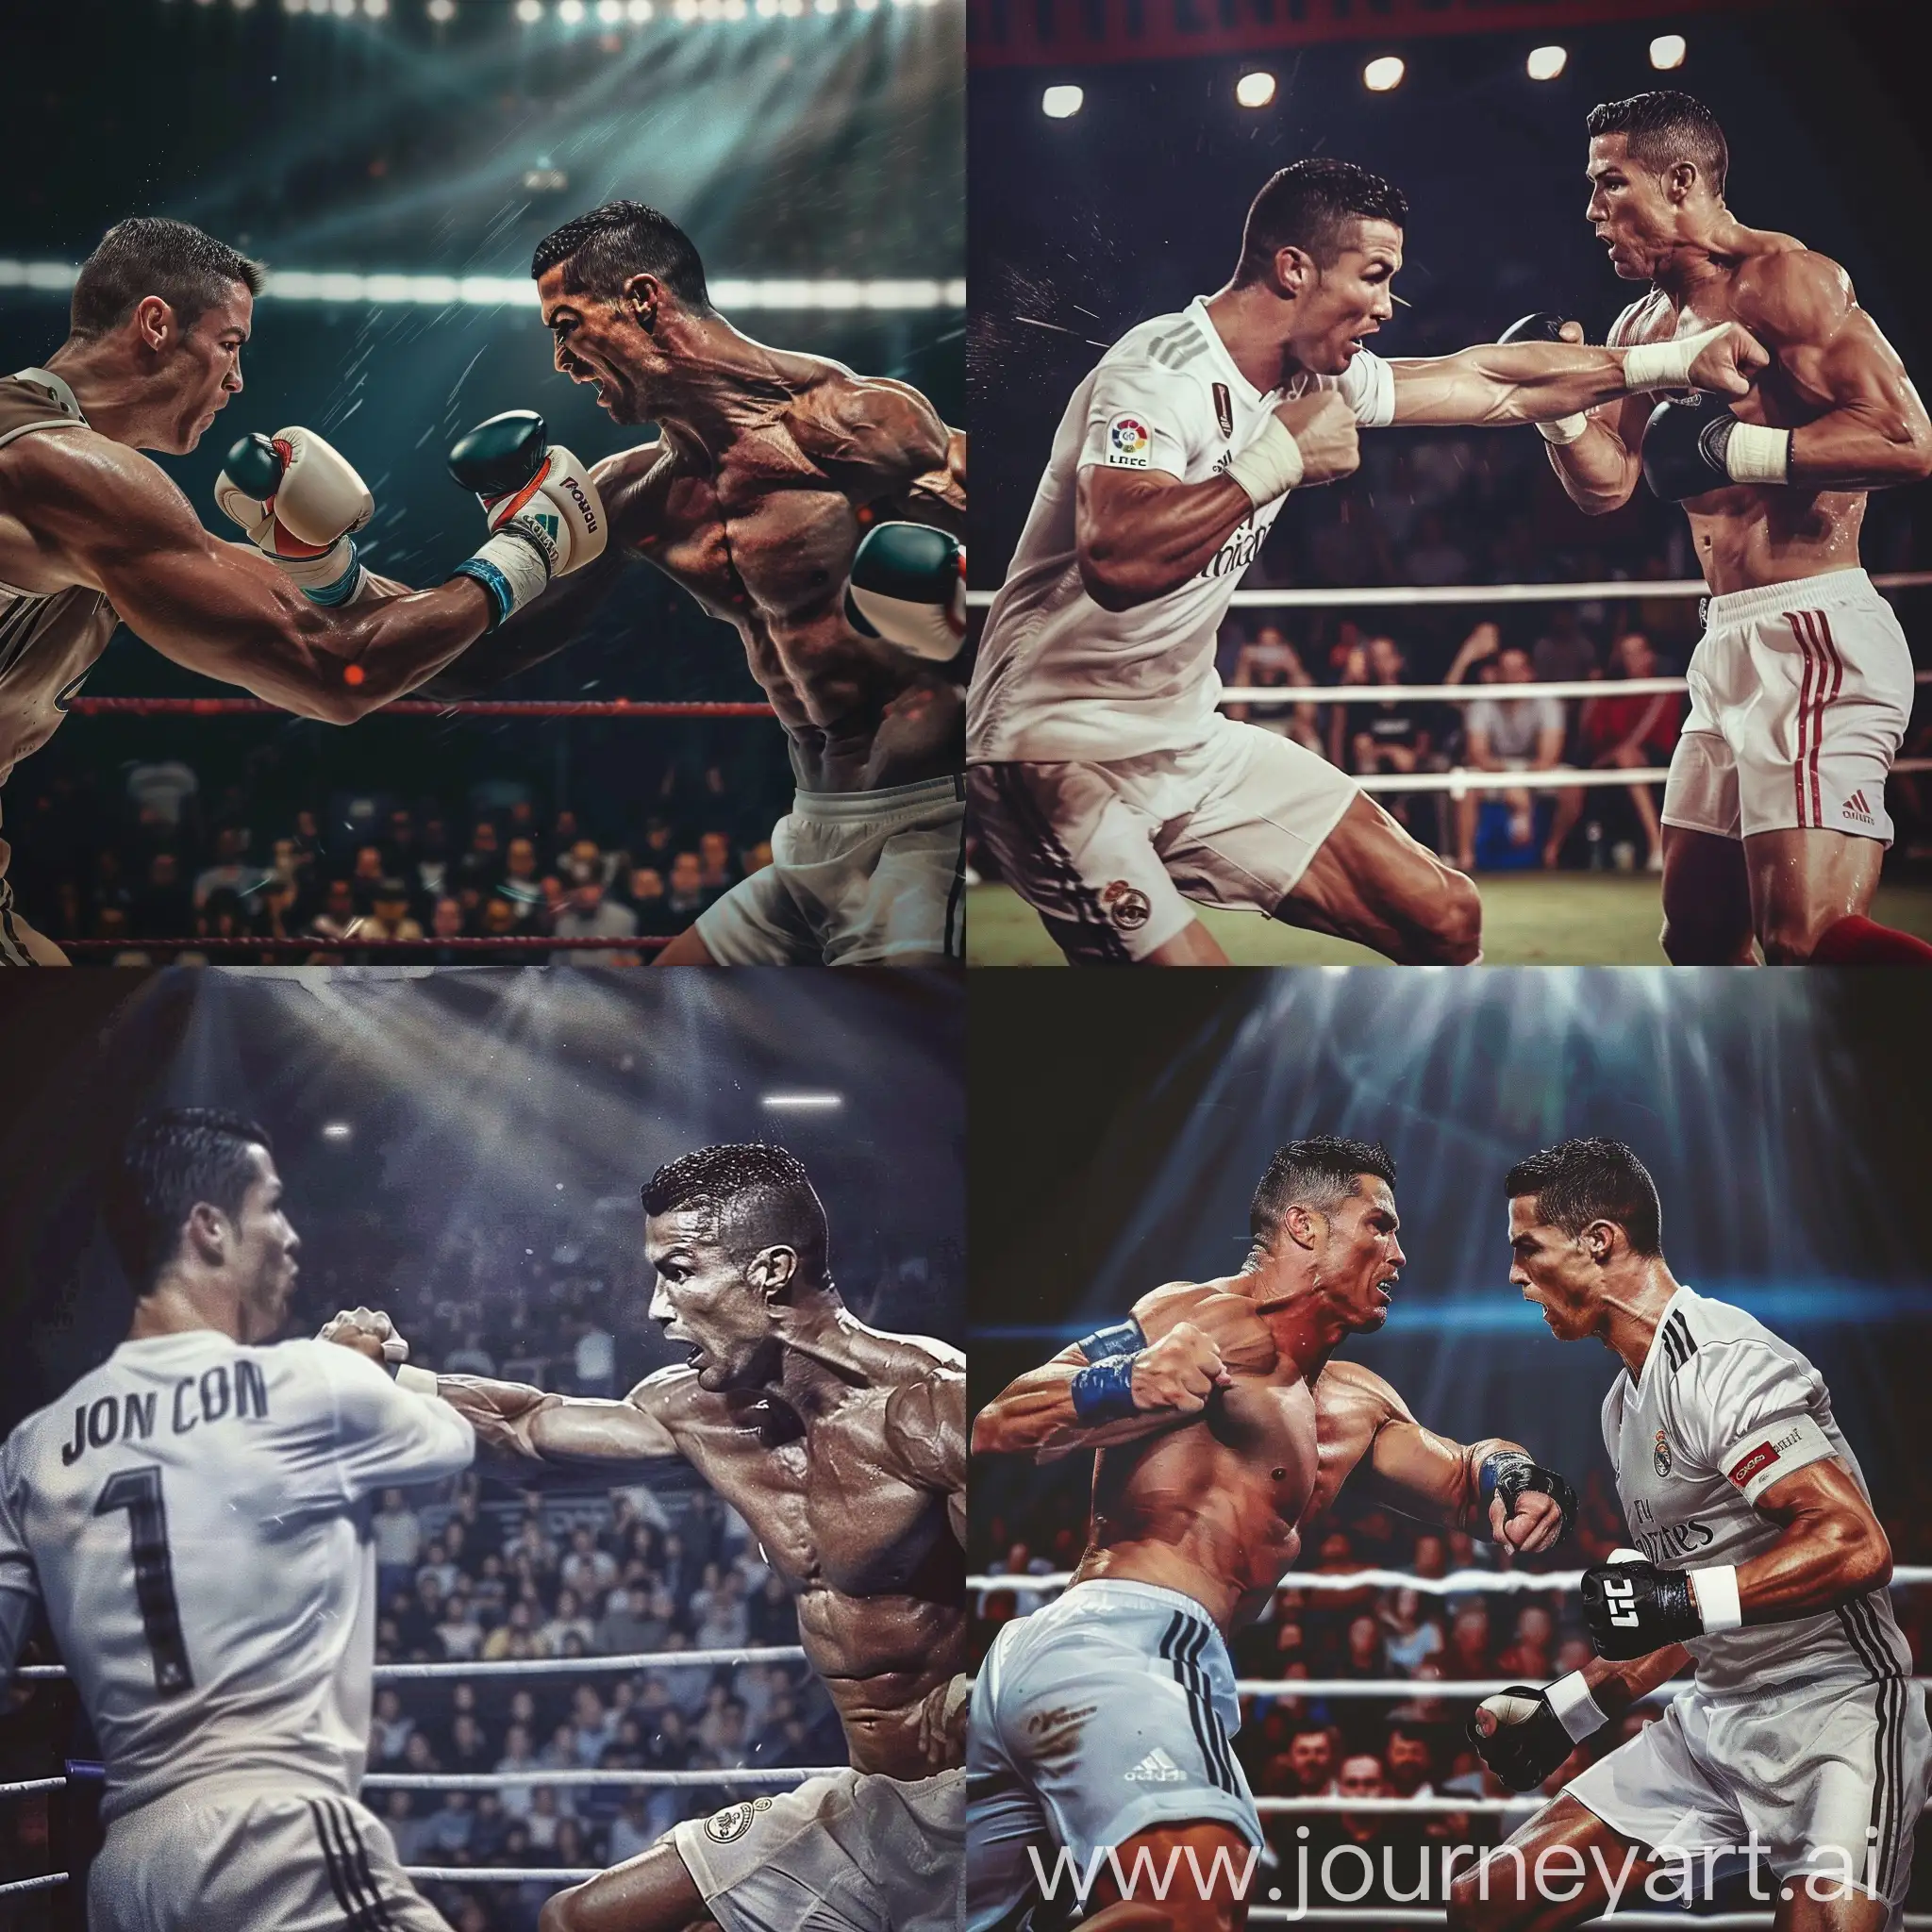 Intense-1v1-Clash-John-Cena-vs-Cristiano-Ronaldo-in-the-Boxing-Ring